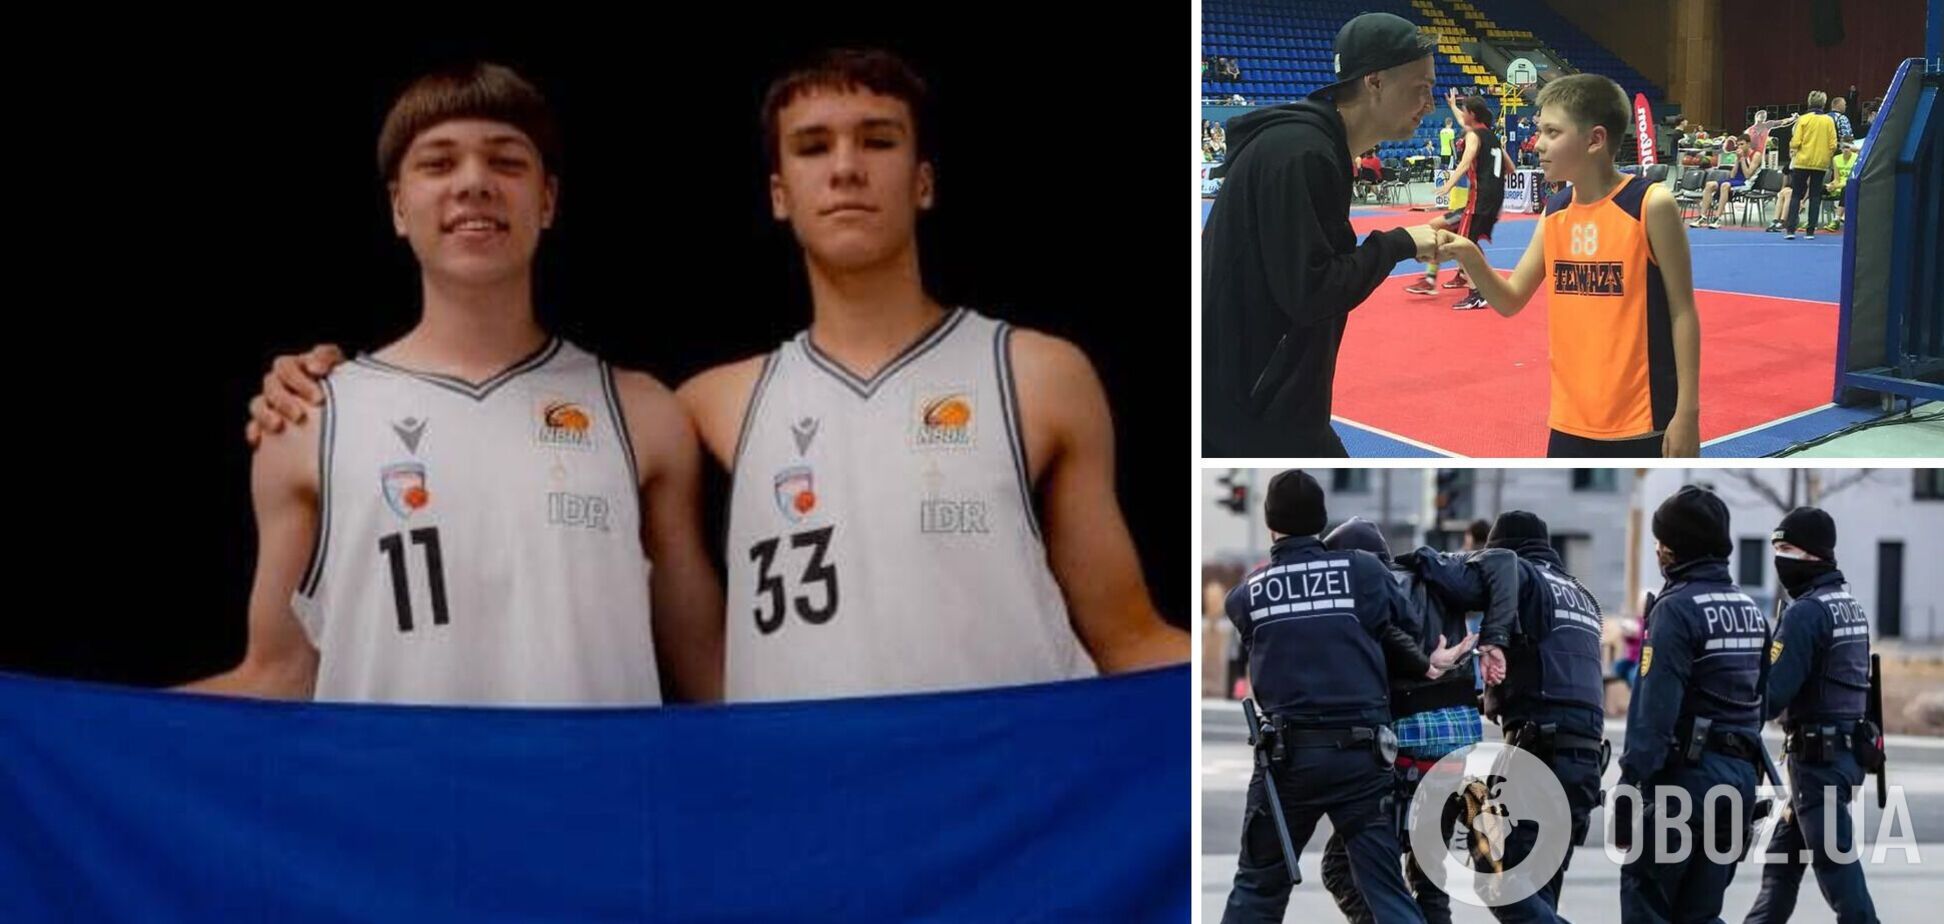 Шесть ударов ножом после вопроса 'Вы украинцы?': детали убийства 17-летнего баскетболиста в Германии рассказал отец выжившего парня